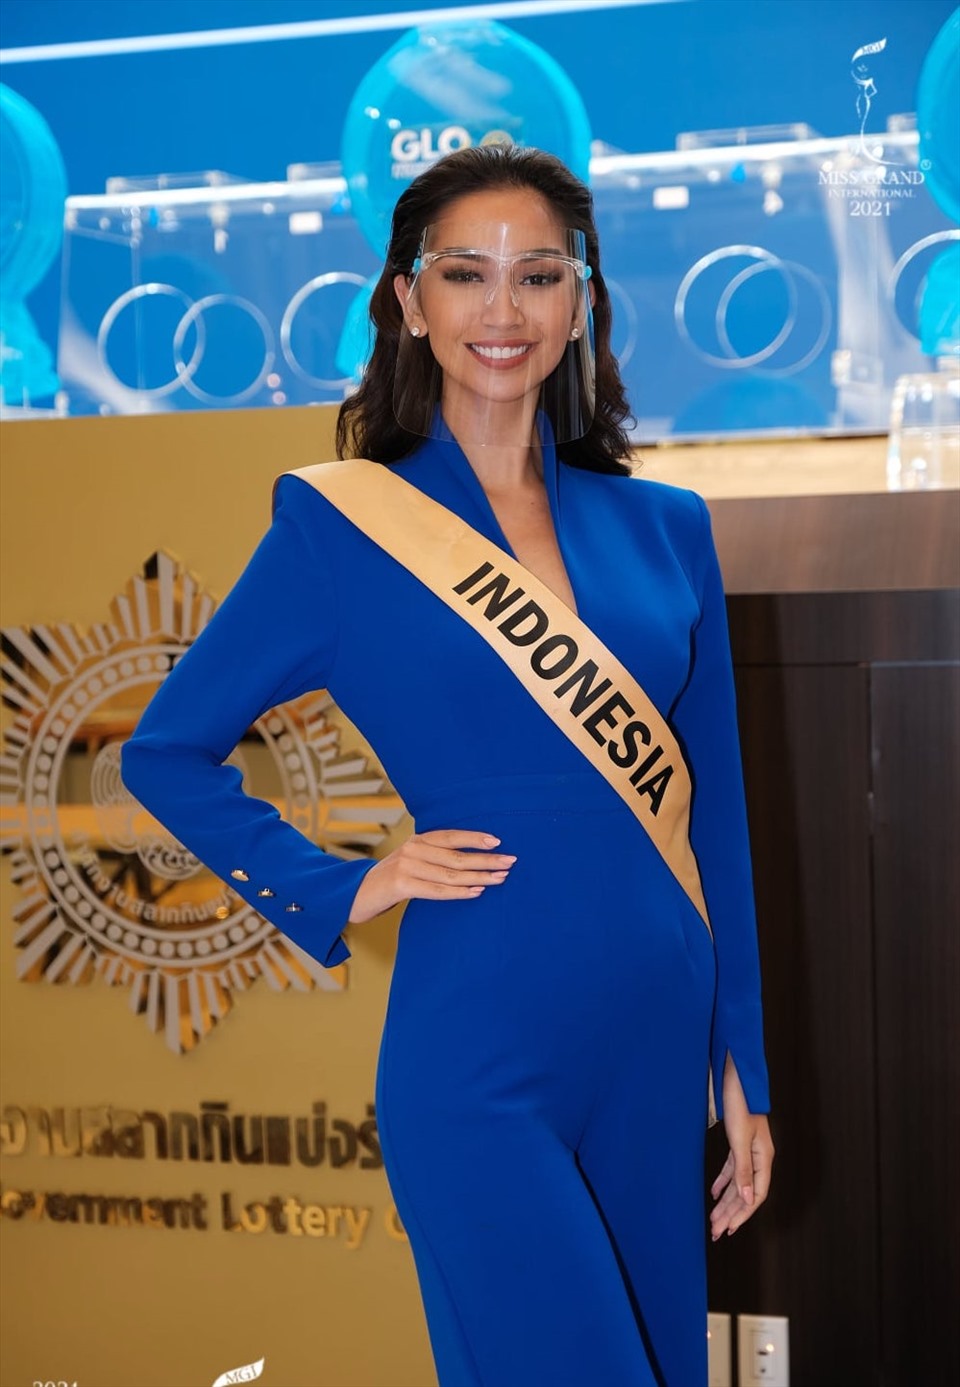 Sophia Rogan năm nay 19 tuổi cao 1m82. Người đẹp đăng quang Miss Grand International Indonesia vào tháng 5.2021.